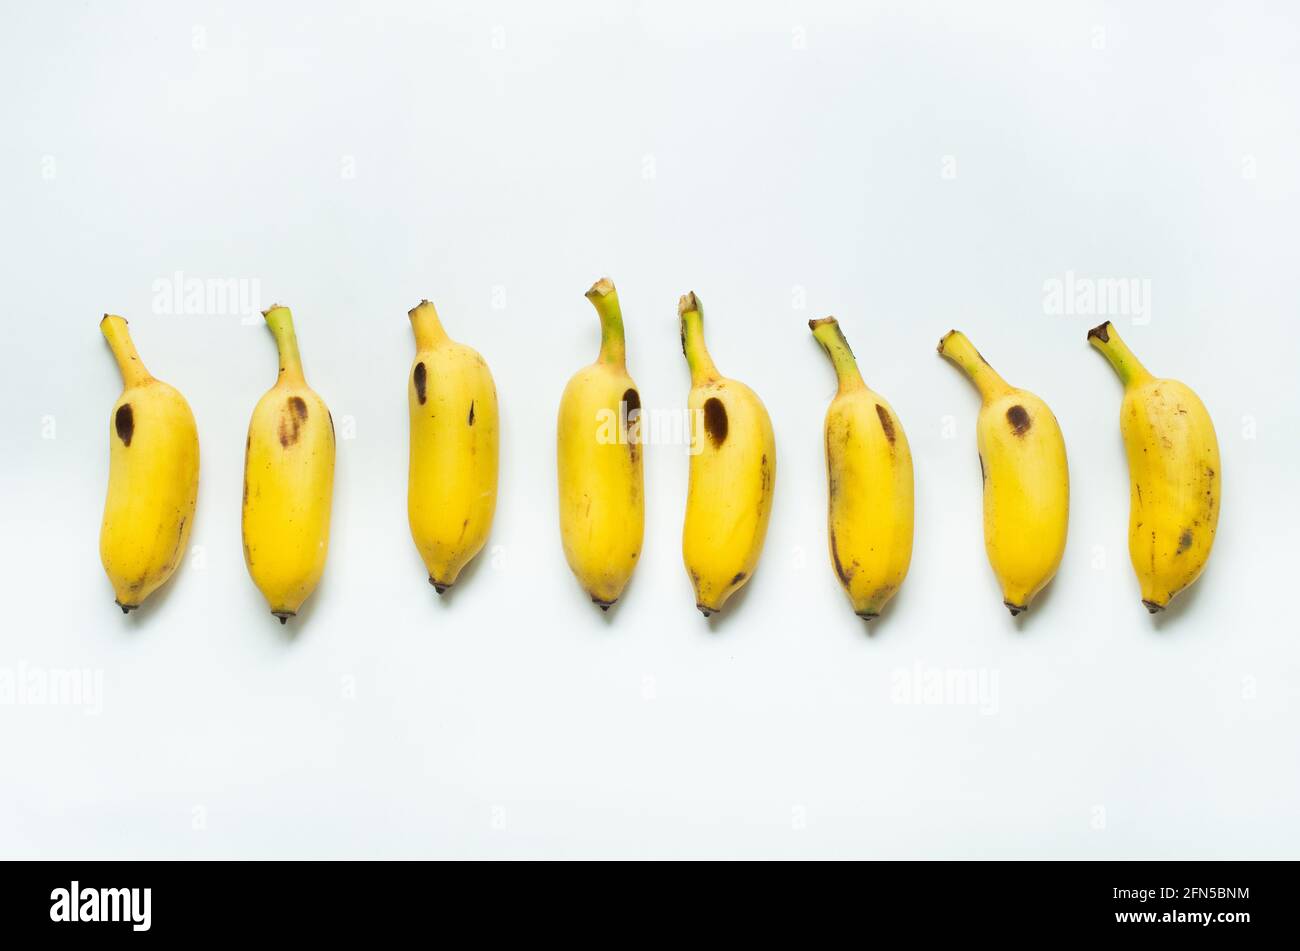 banana isolata o plantain come dieta di alimento Foto Stock